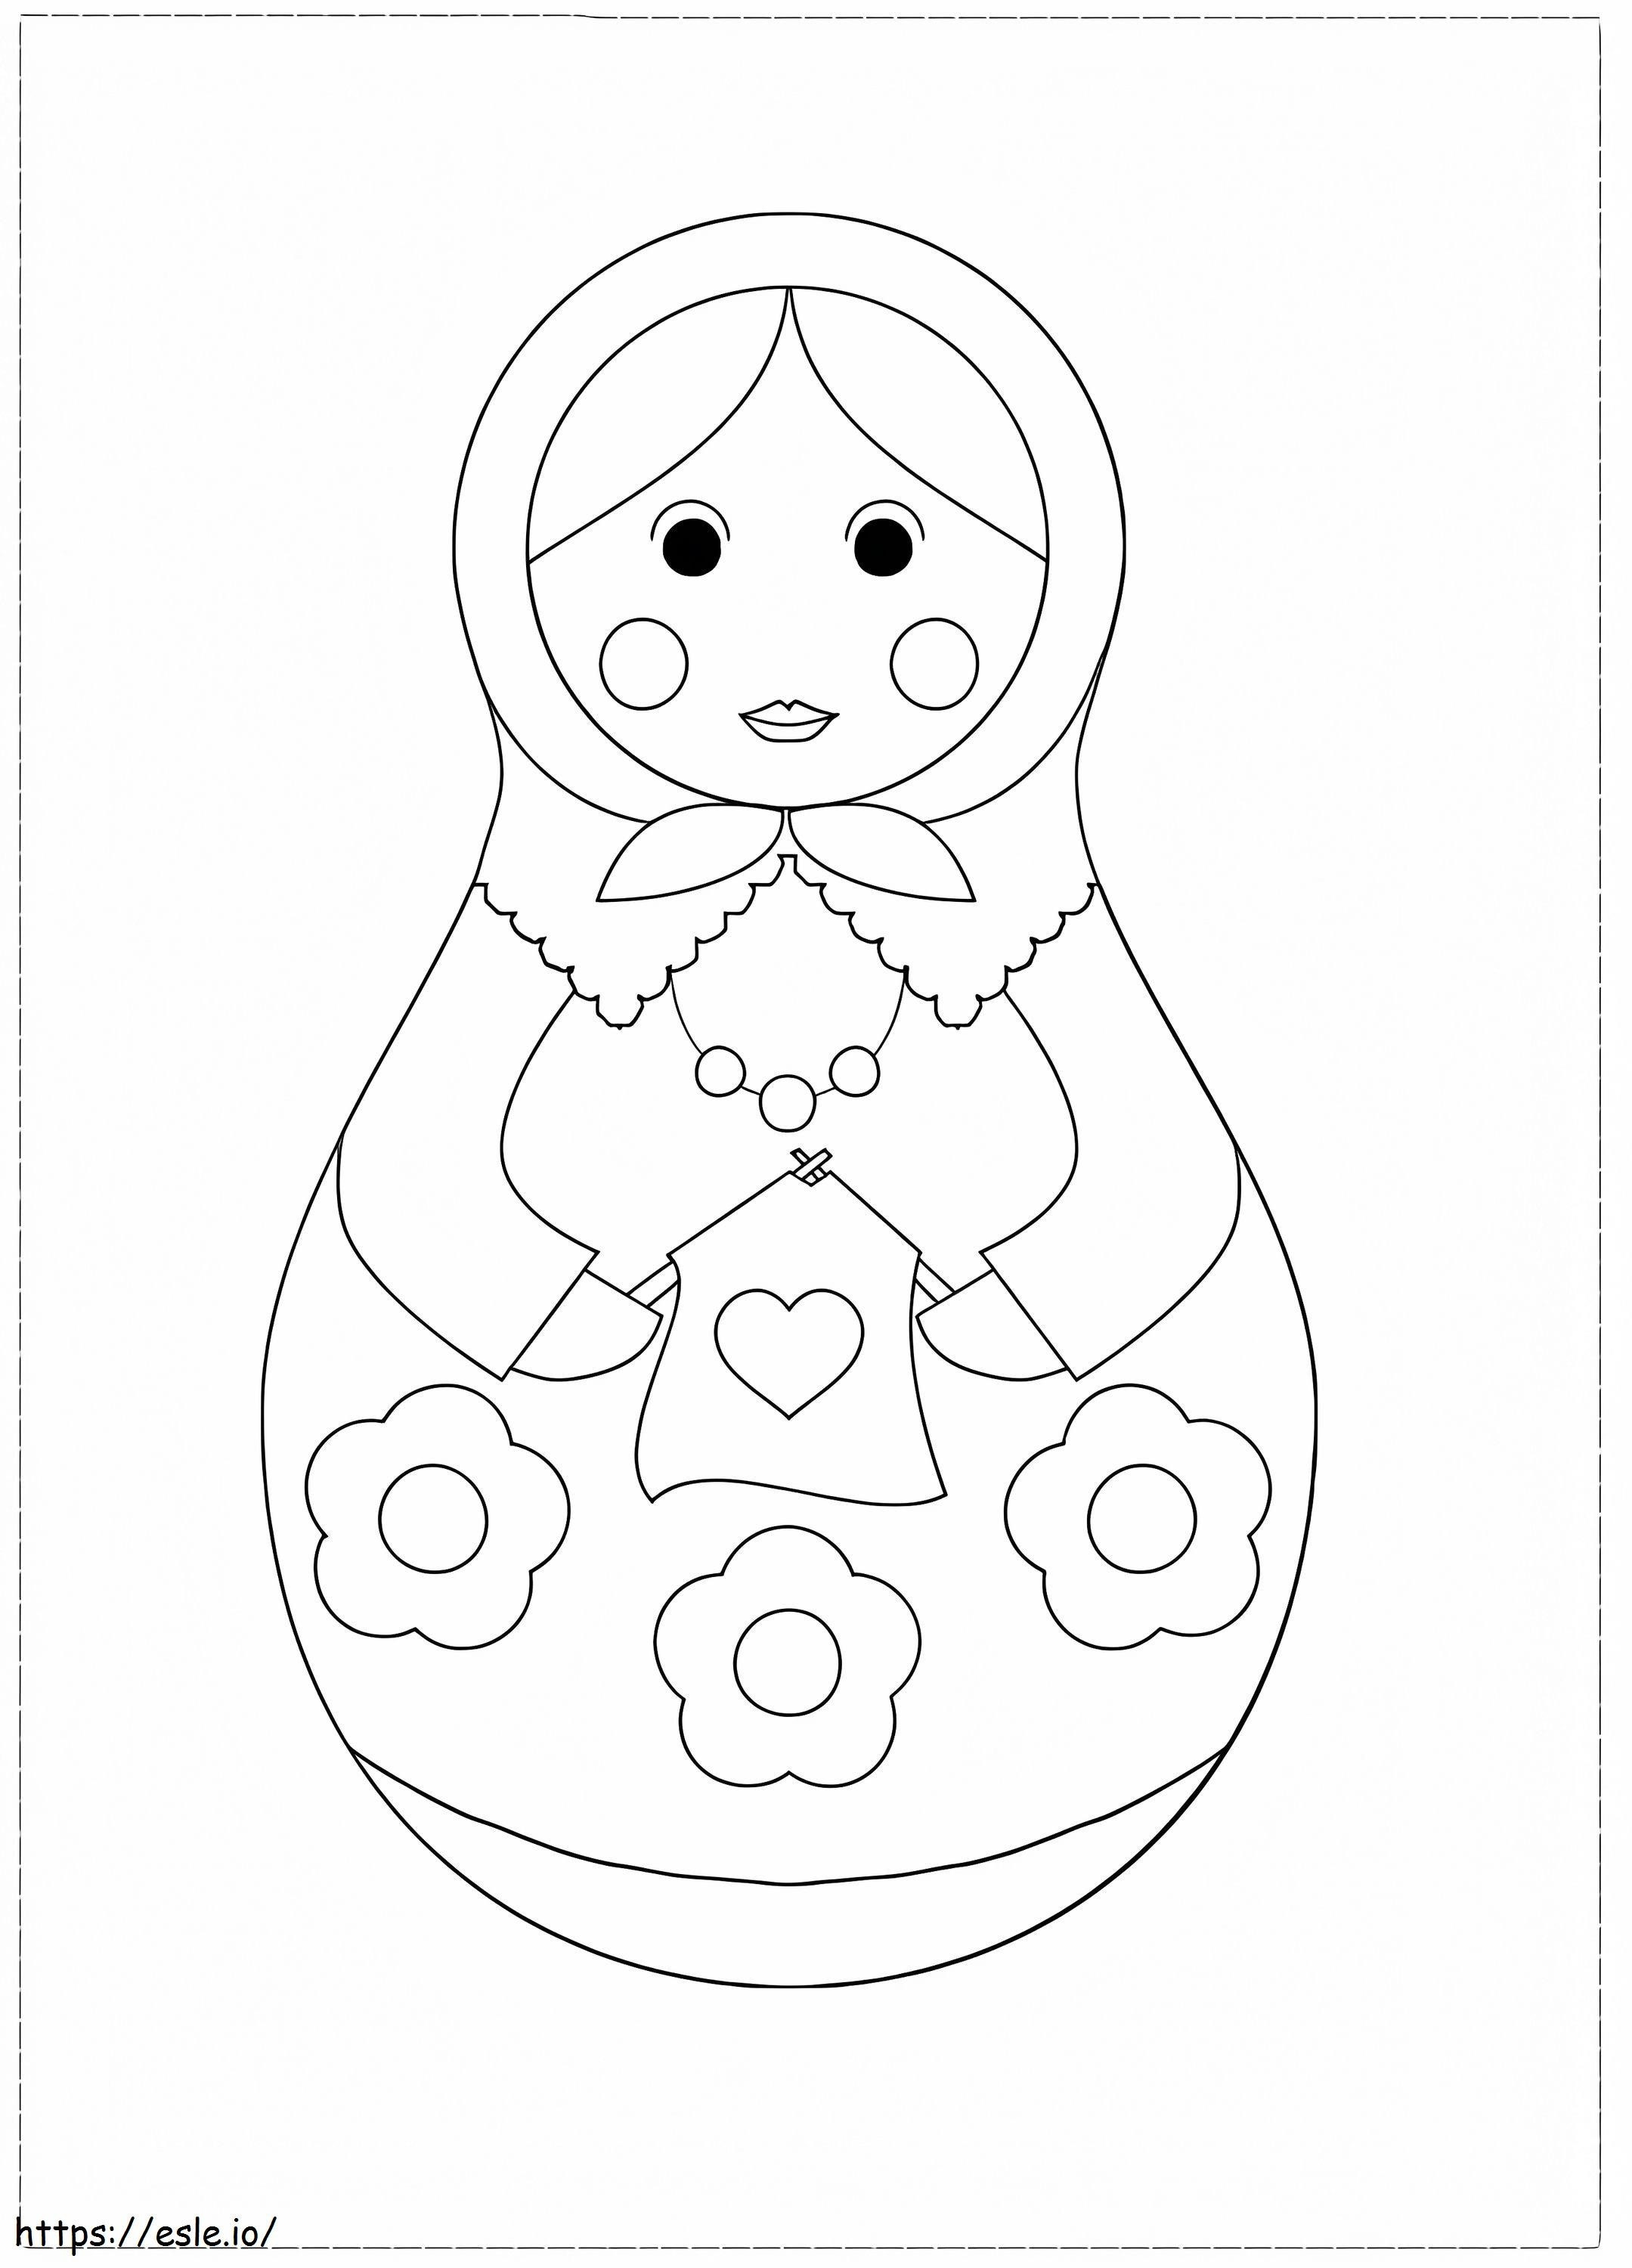 Free Matryoshka Doll coloring page